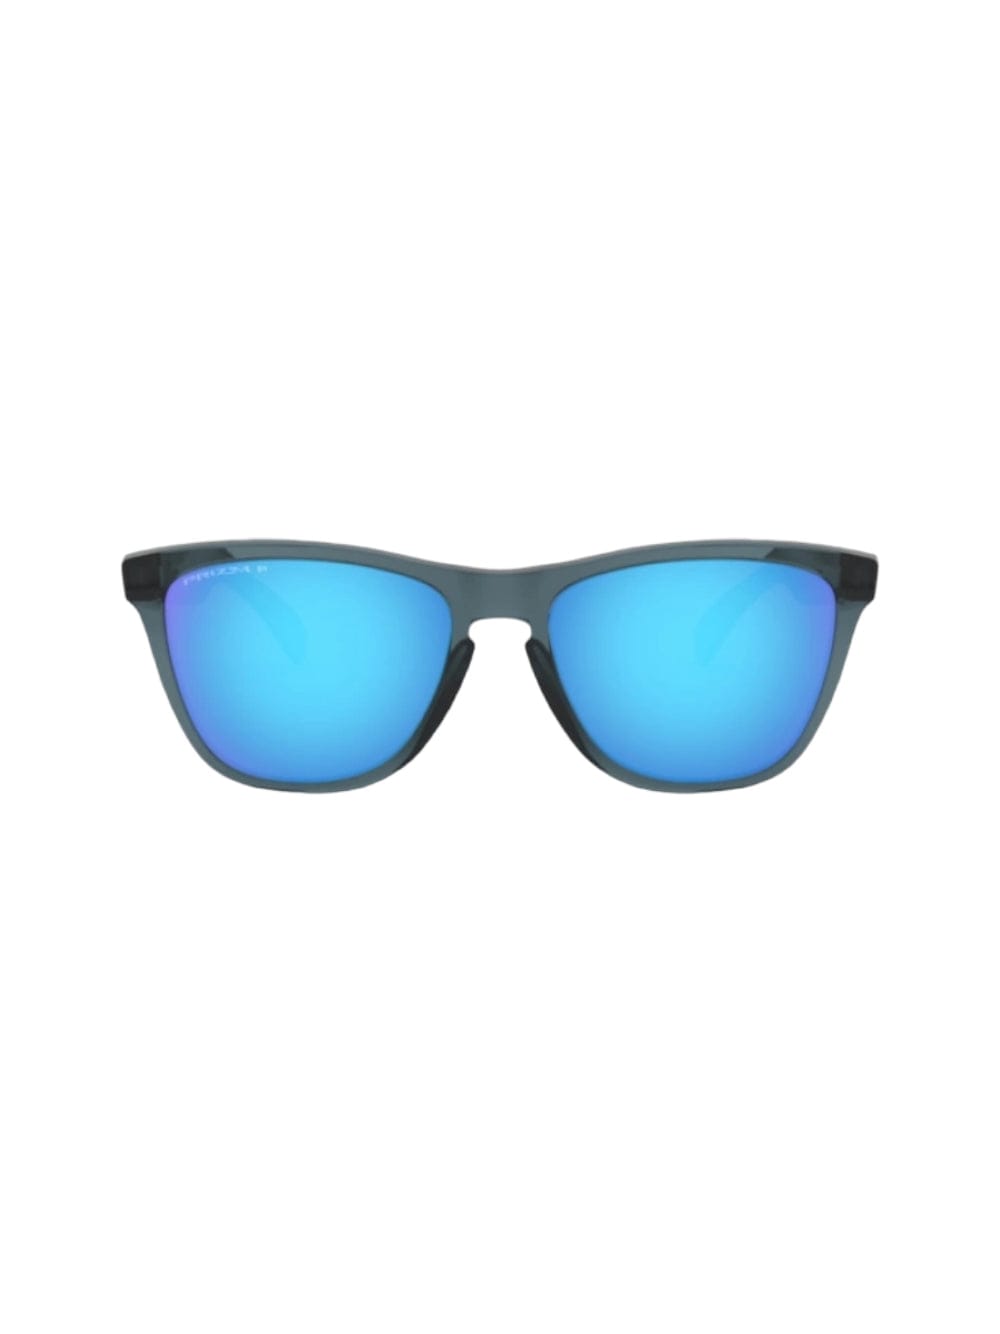 Shop Oakley Frogskins - 9013 Sunglasses